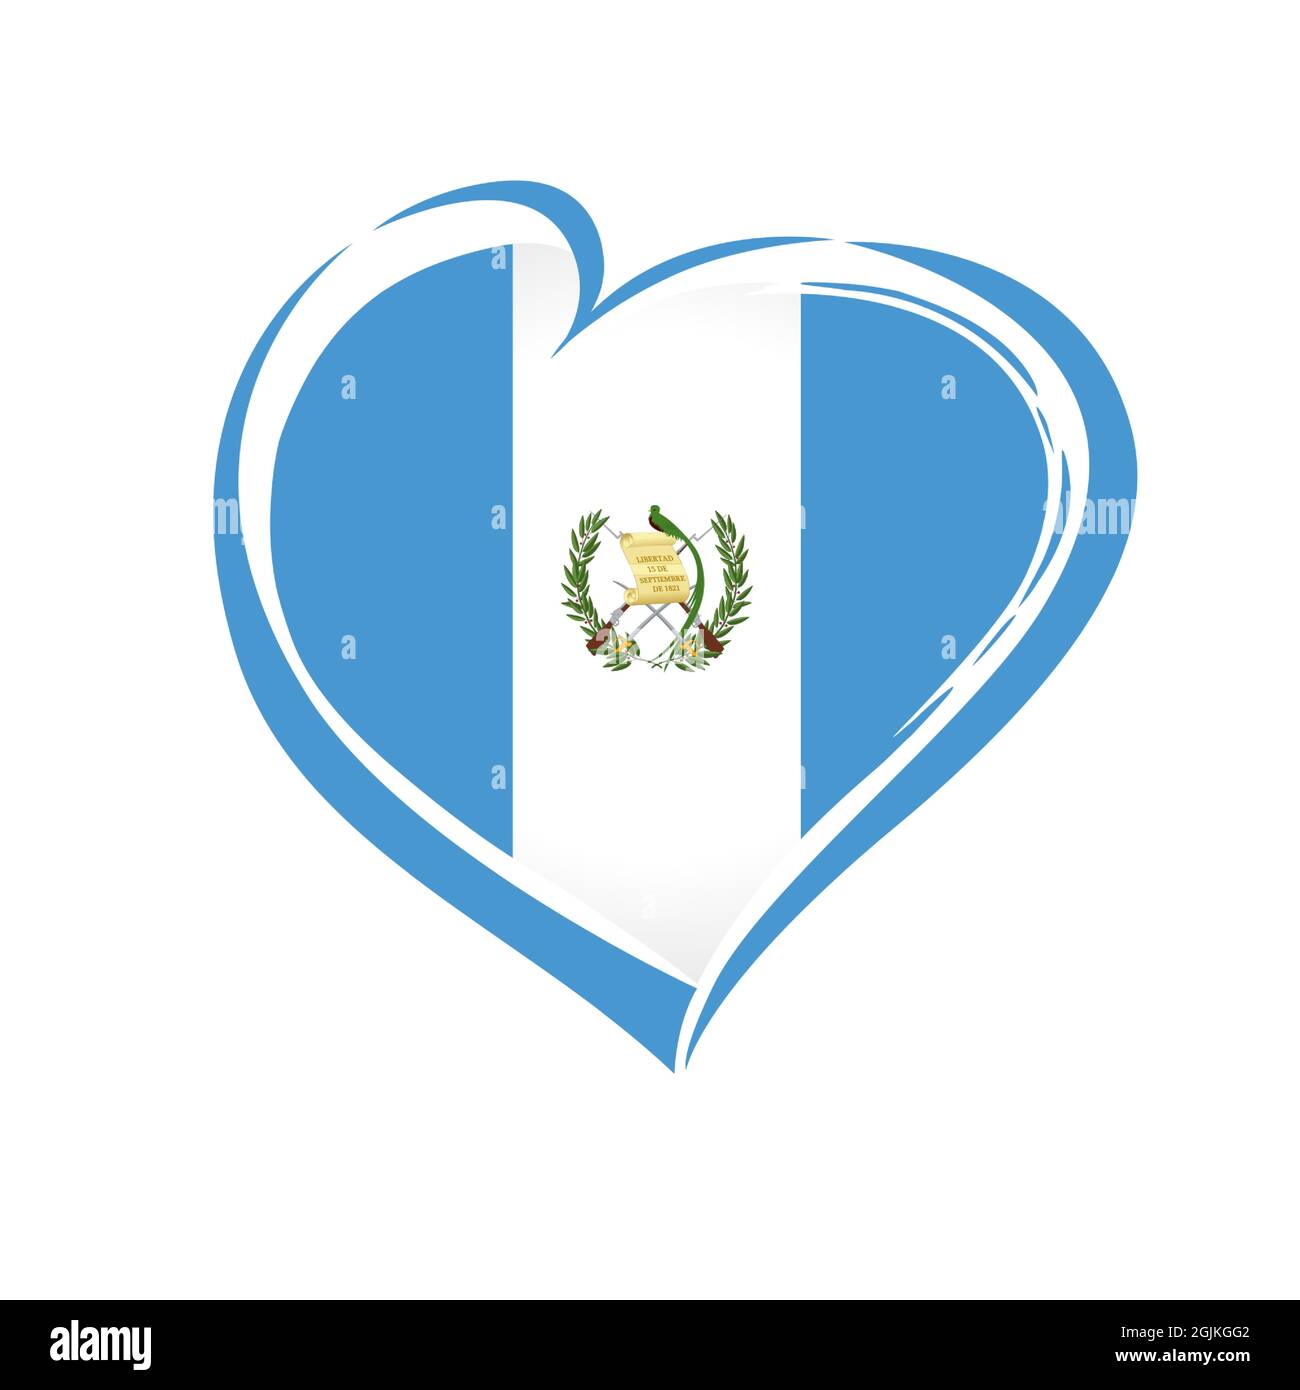 Simbolo della bandiera guatemalteca Love. Bandiera del Guatemala in forma di cuore per la Giornata dell'Indipendenza del Guatemala 15 settembre 1821 isolato su sfondo bianco. Vettore Illustrazione Vettoriale